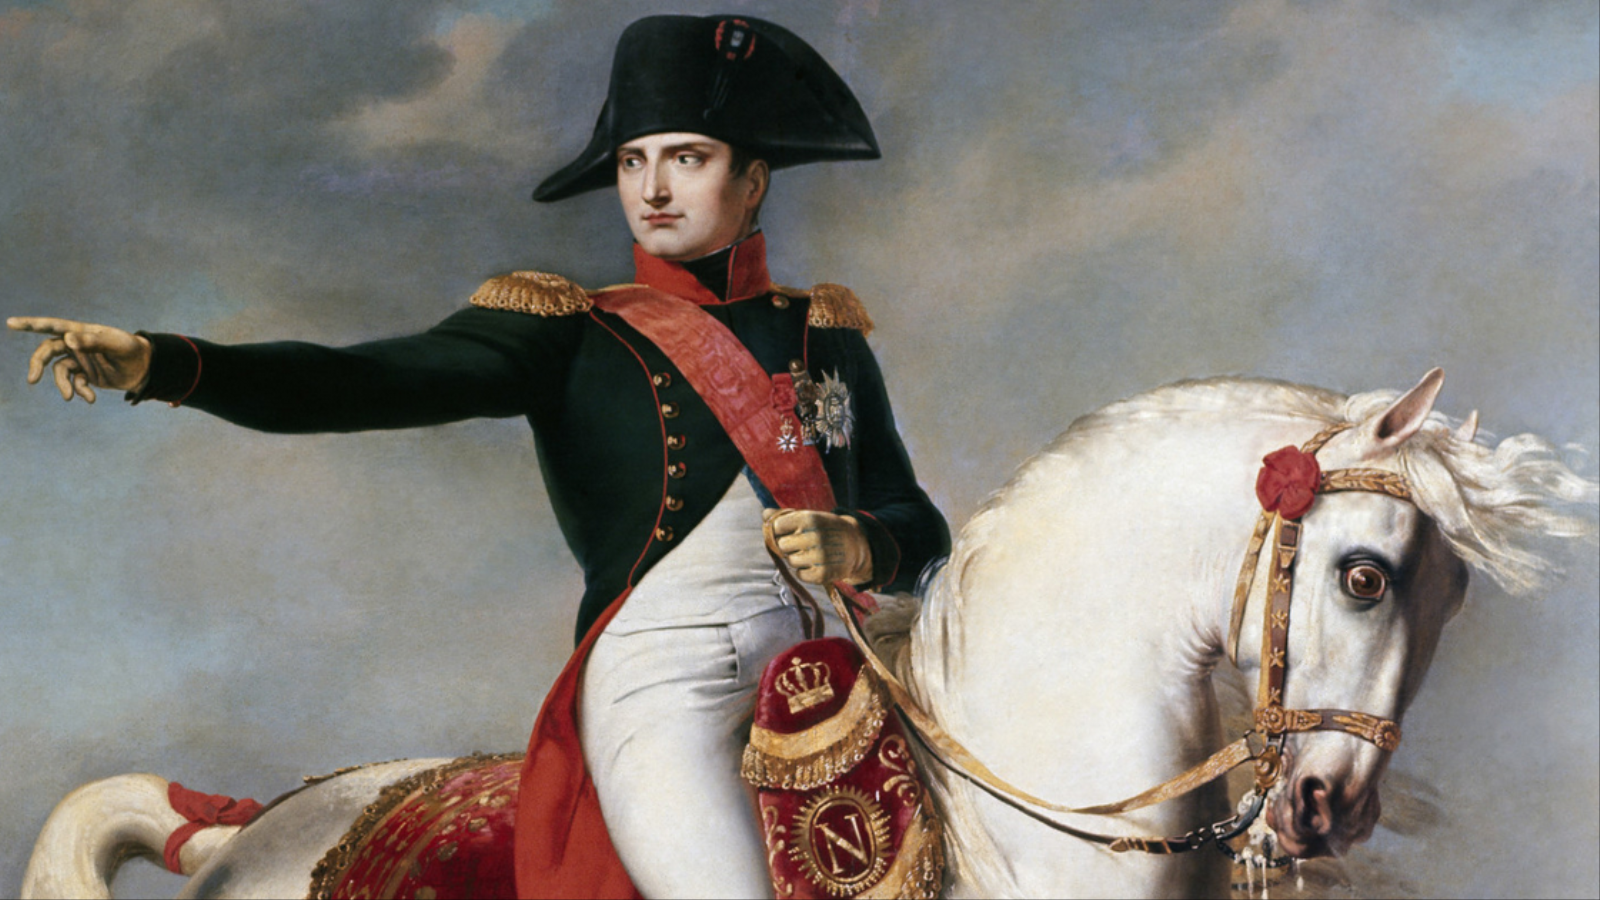 ‪الإمبراطور نابليون رد الاعتبار لنوتردام دو باري بعدما فعلته بها الثورة الفرنسية من إهمال وتدنيس‬ (مواقع التواصل الاجتماعي)